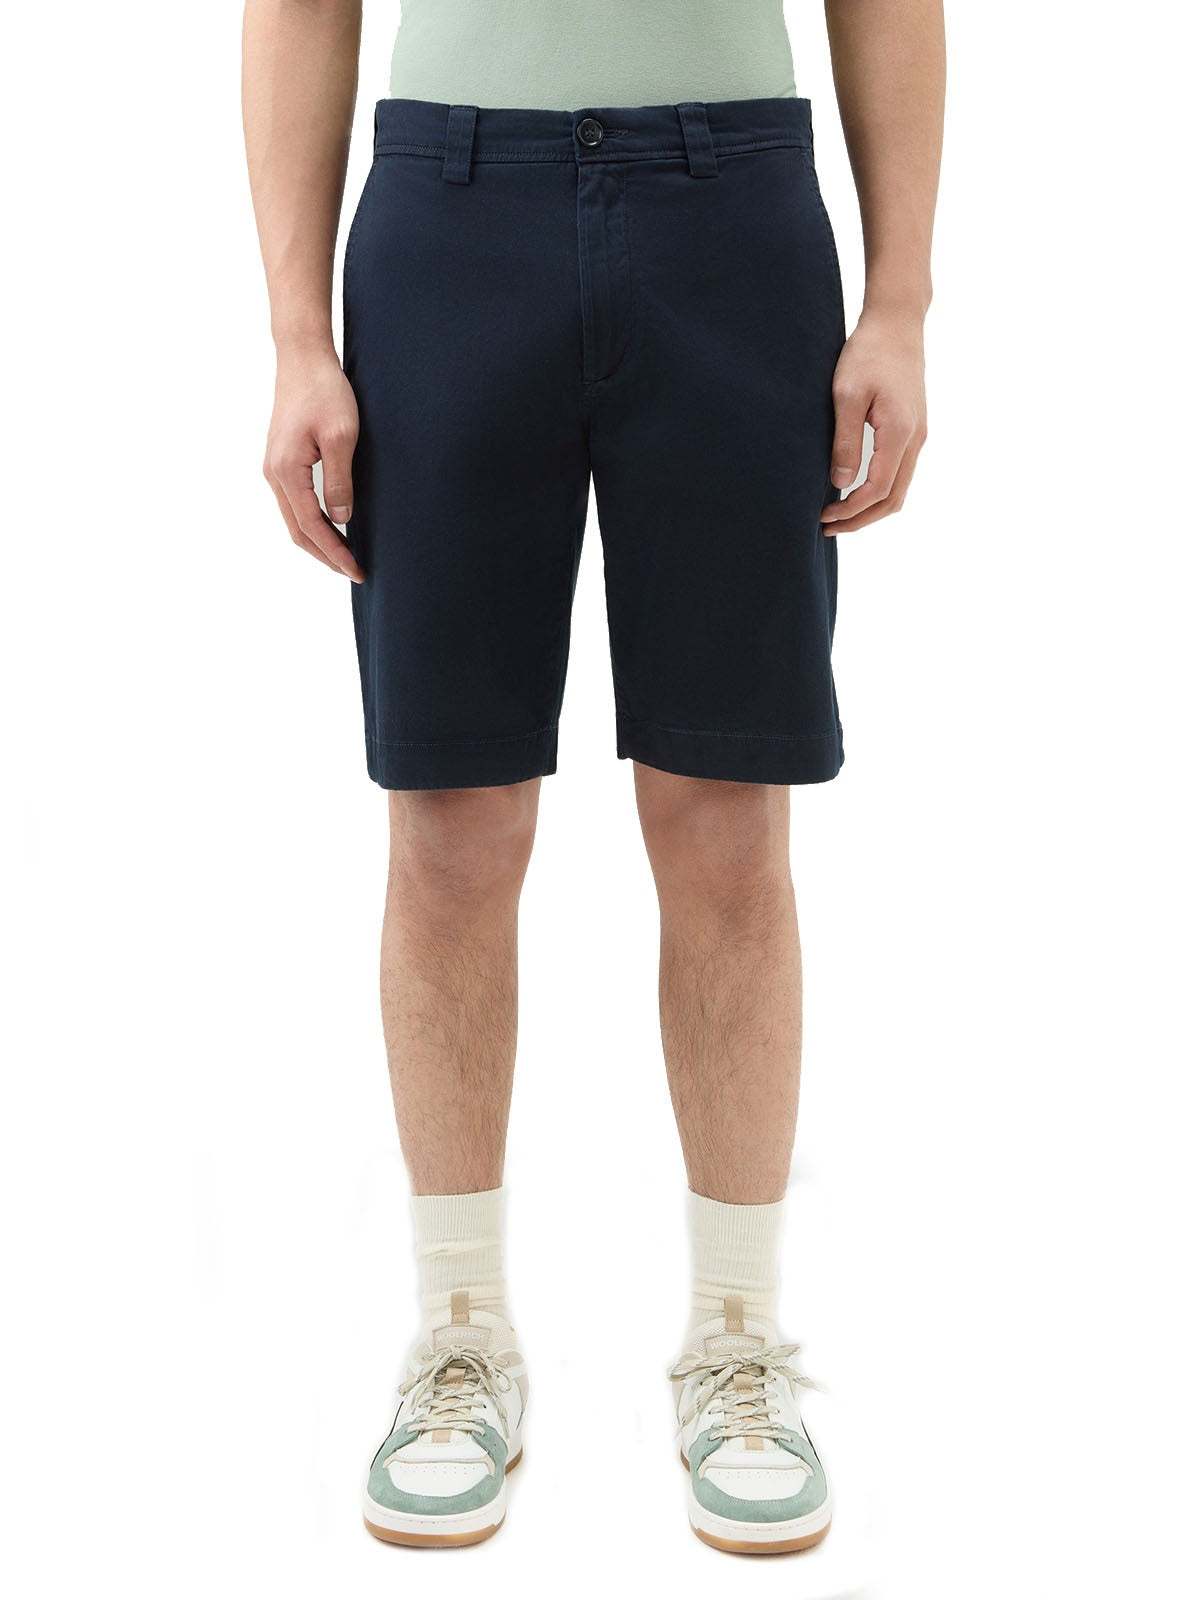 Bermuda Uomo Woolrich - Pantaloncini Chino In Cotone Elasticizzato - Blu